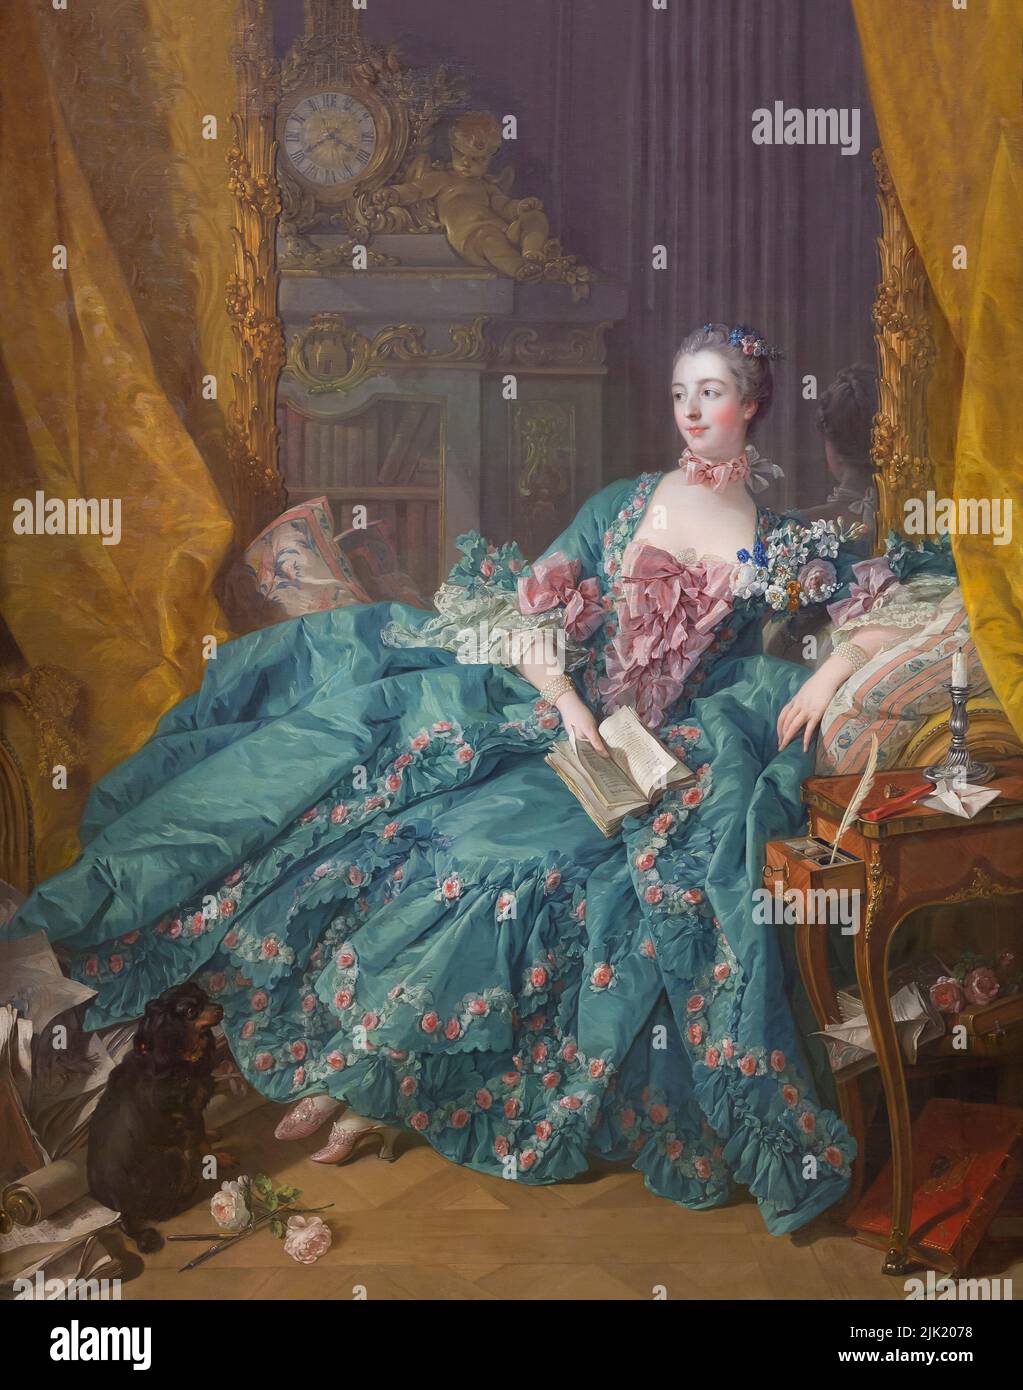 Madame de Pompadour, François Boucher, 1756, Alte Pinakothek, Munich, Allemagne, Europe Banque D'Images